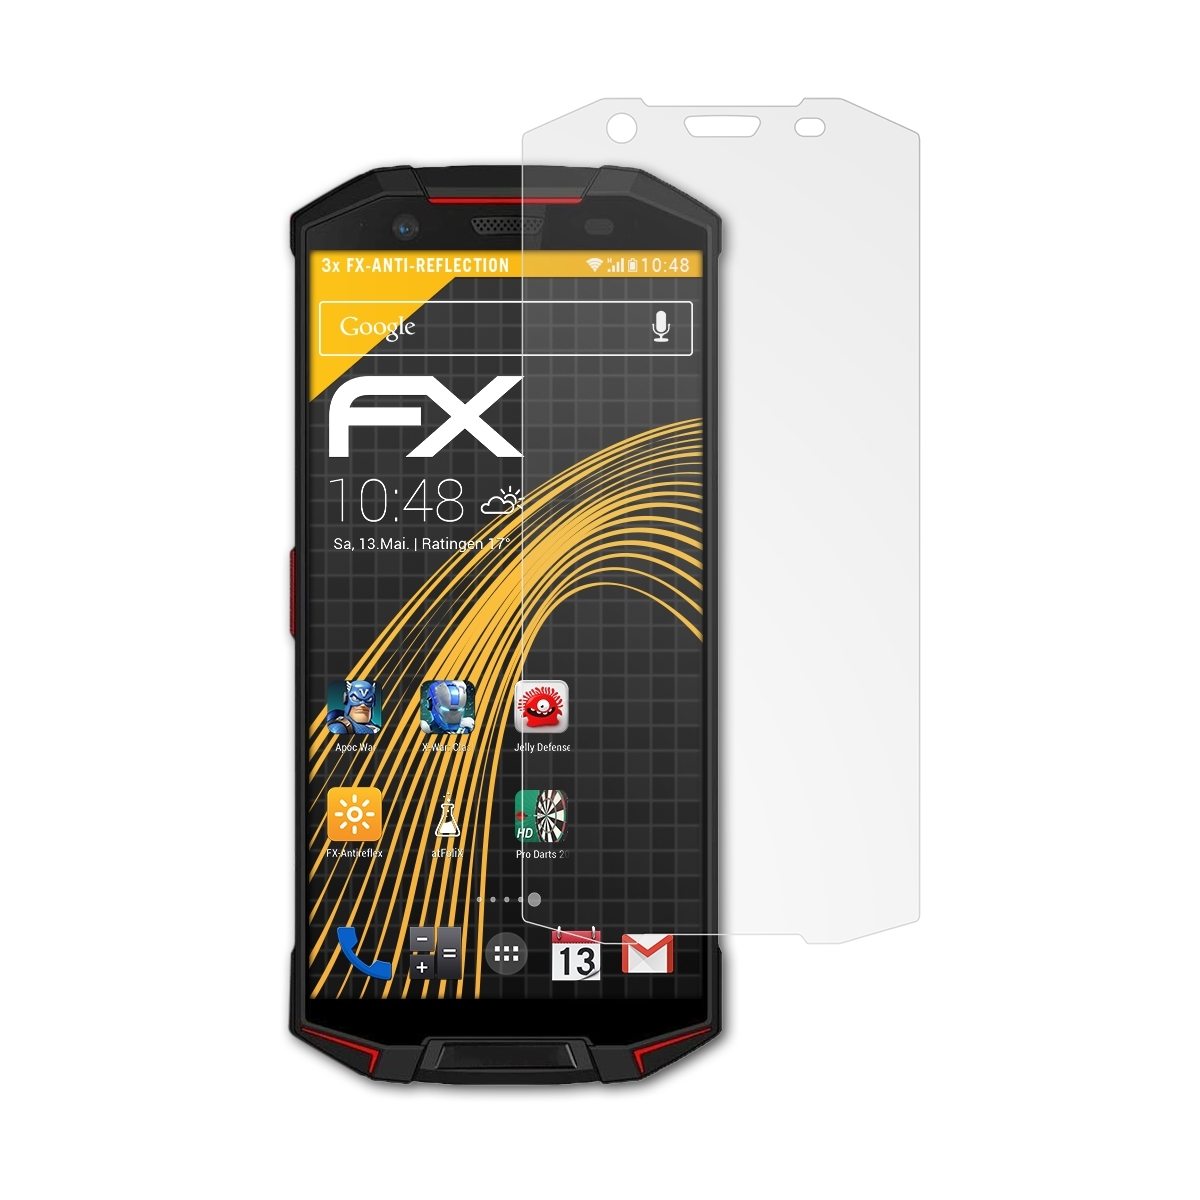 3x FX-Antireflex Doogee Displayschutz(für ATFOLIX S70)